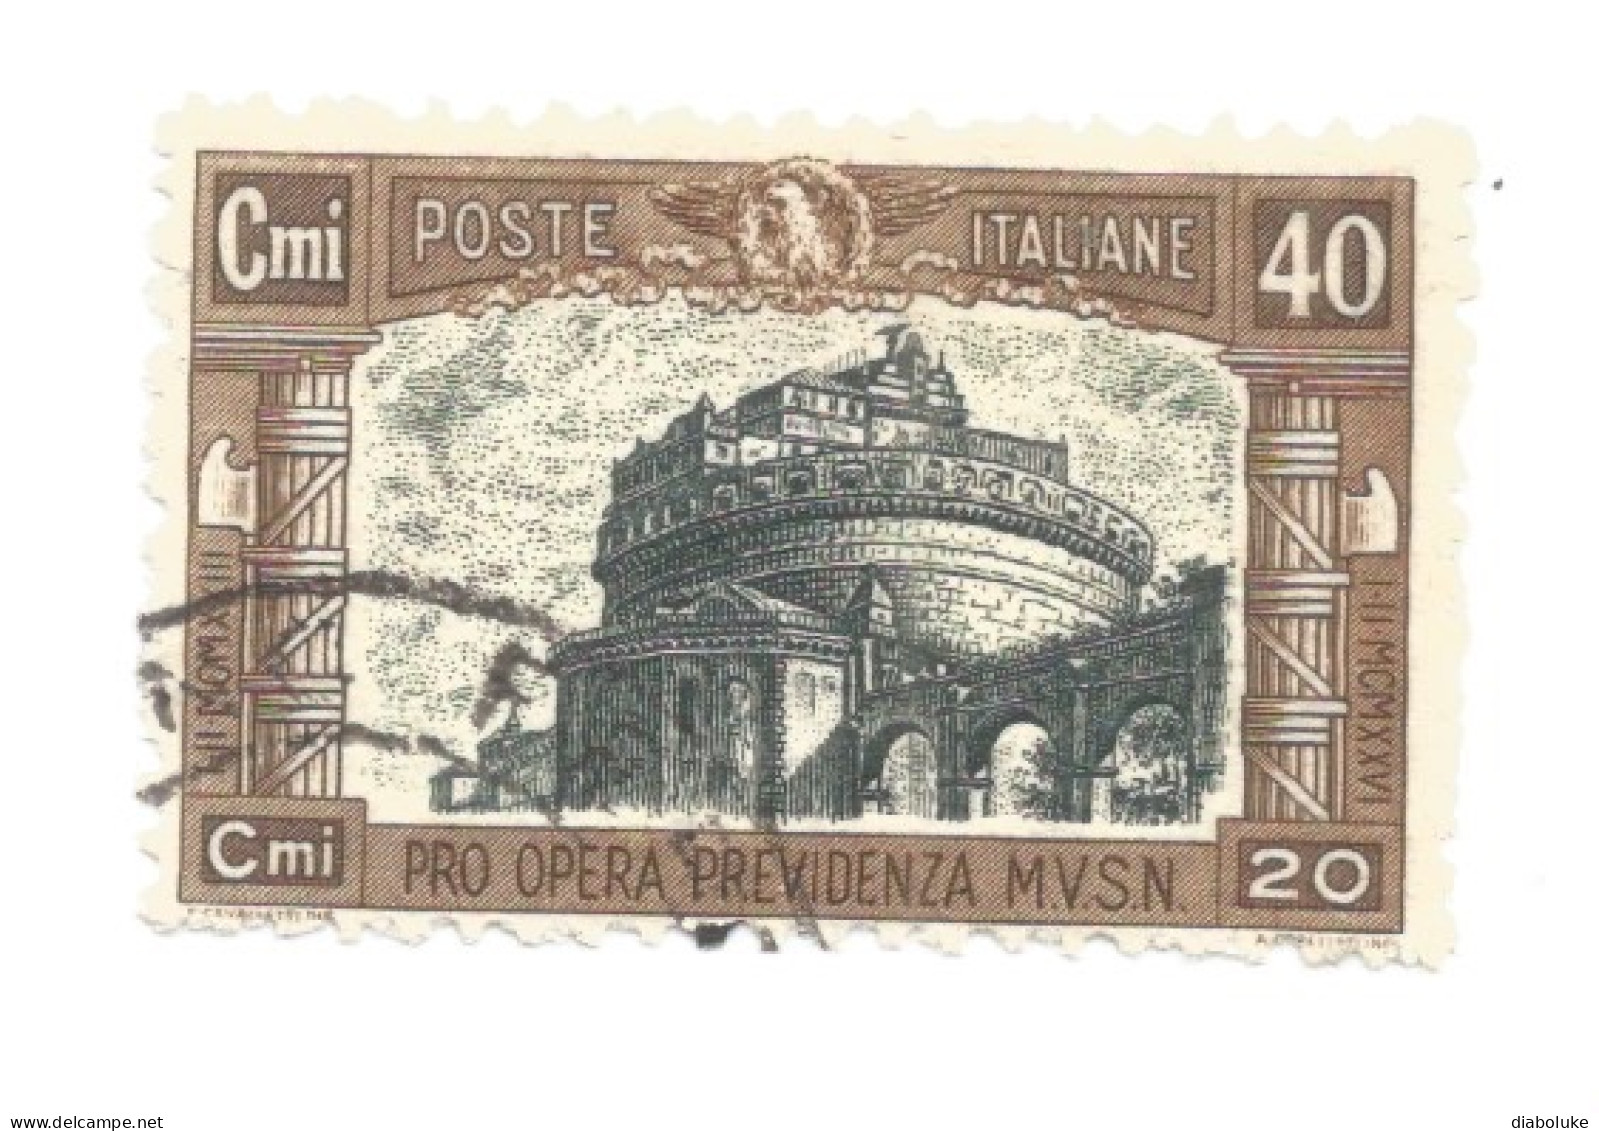 (REGNO D'ITALIA) 1926, PRO OPERA PREVIDENZIA MILIZIA - Serie Di 4 Francobolli Usati, Annulli Da Periziare - Airmail